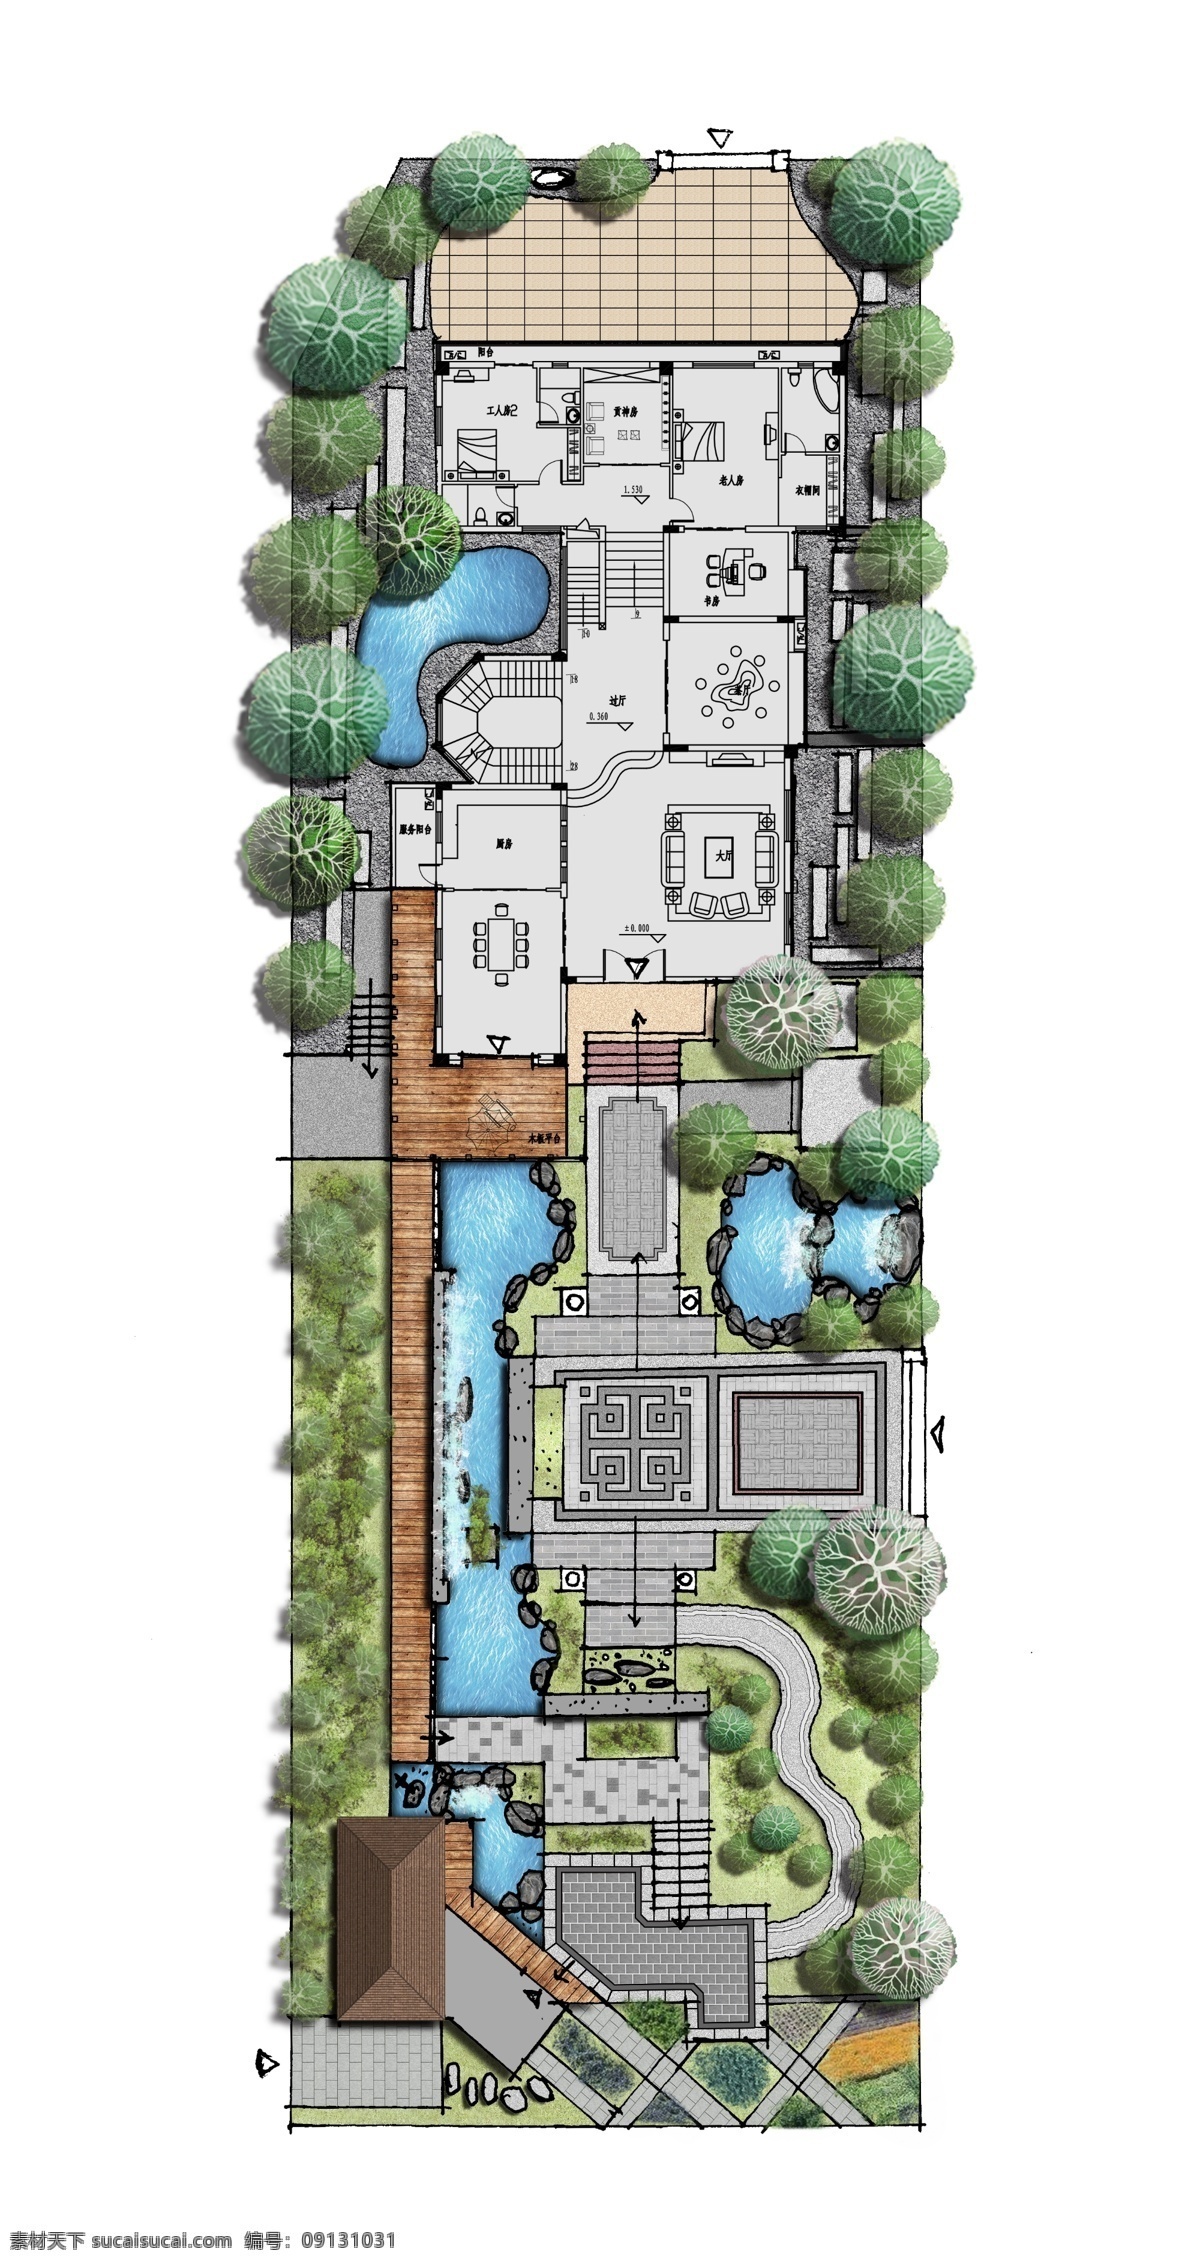 别墅 庭院 方案设计 彩 平 图 园林 彩平 平面图 方案 园林平面图